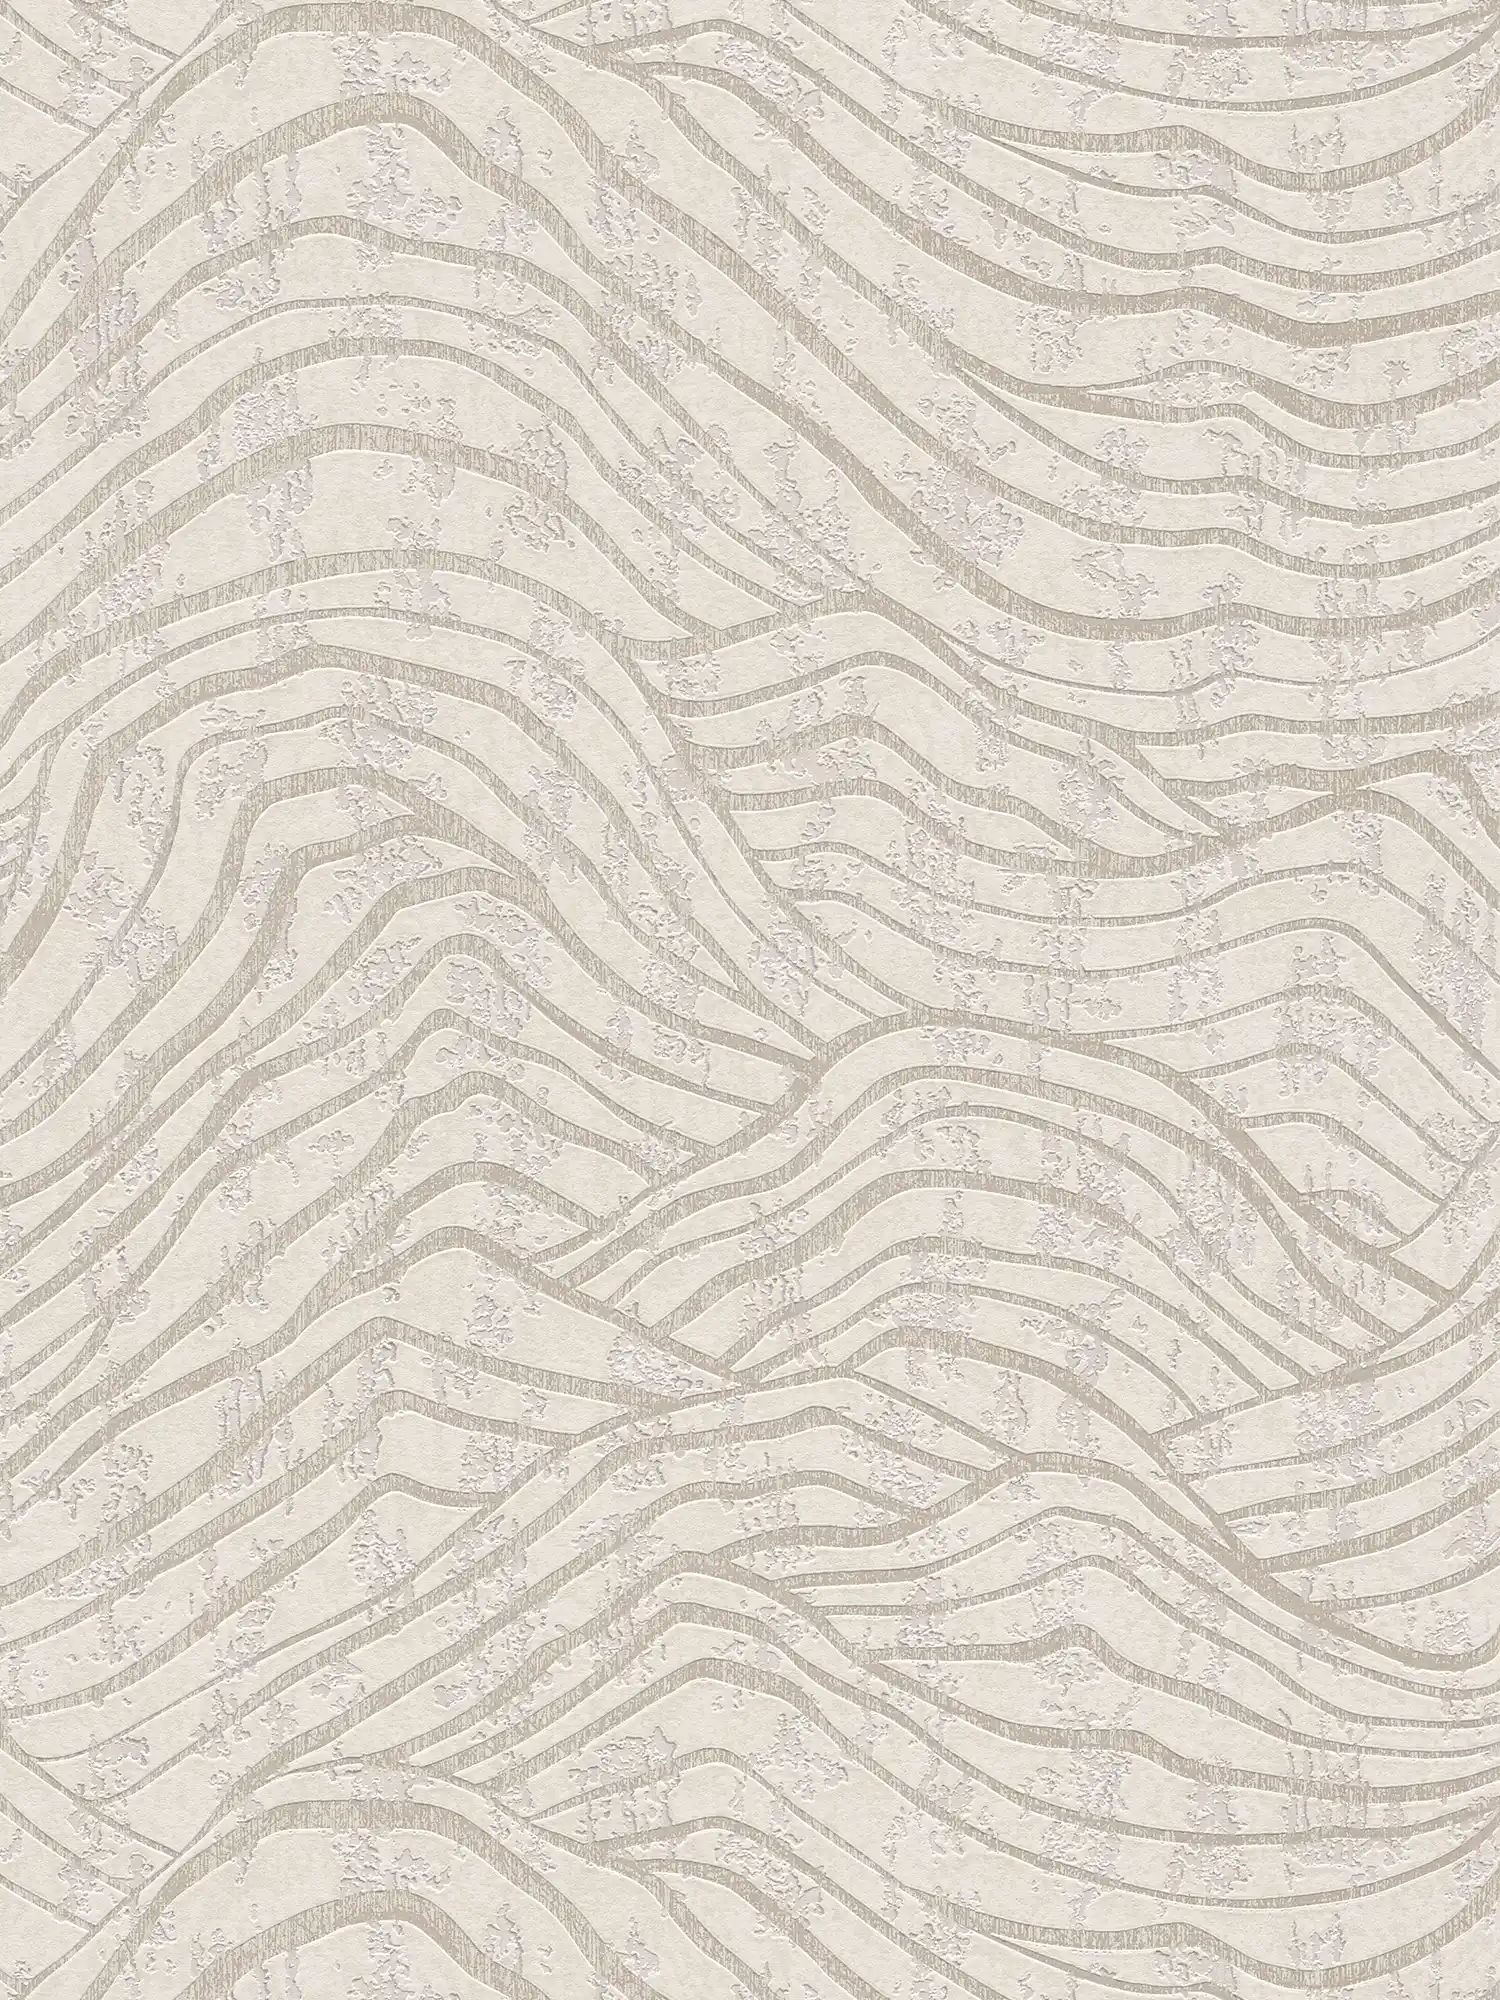 Abstrakte Tapete mit Hügel Muster in sanften Farben – Weiß, Silber
